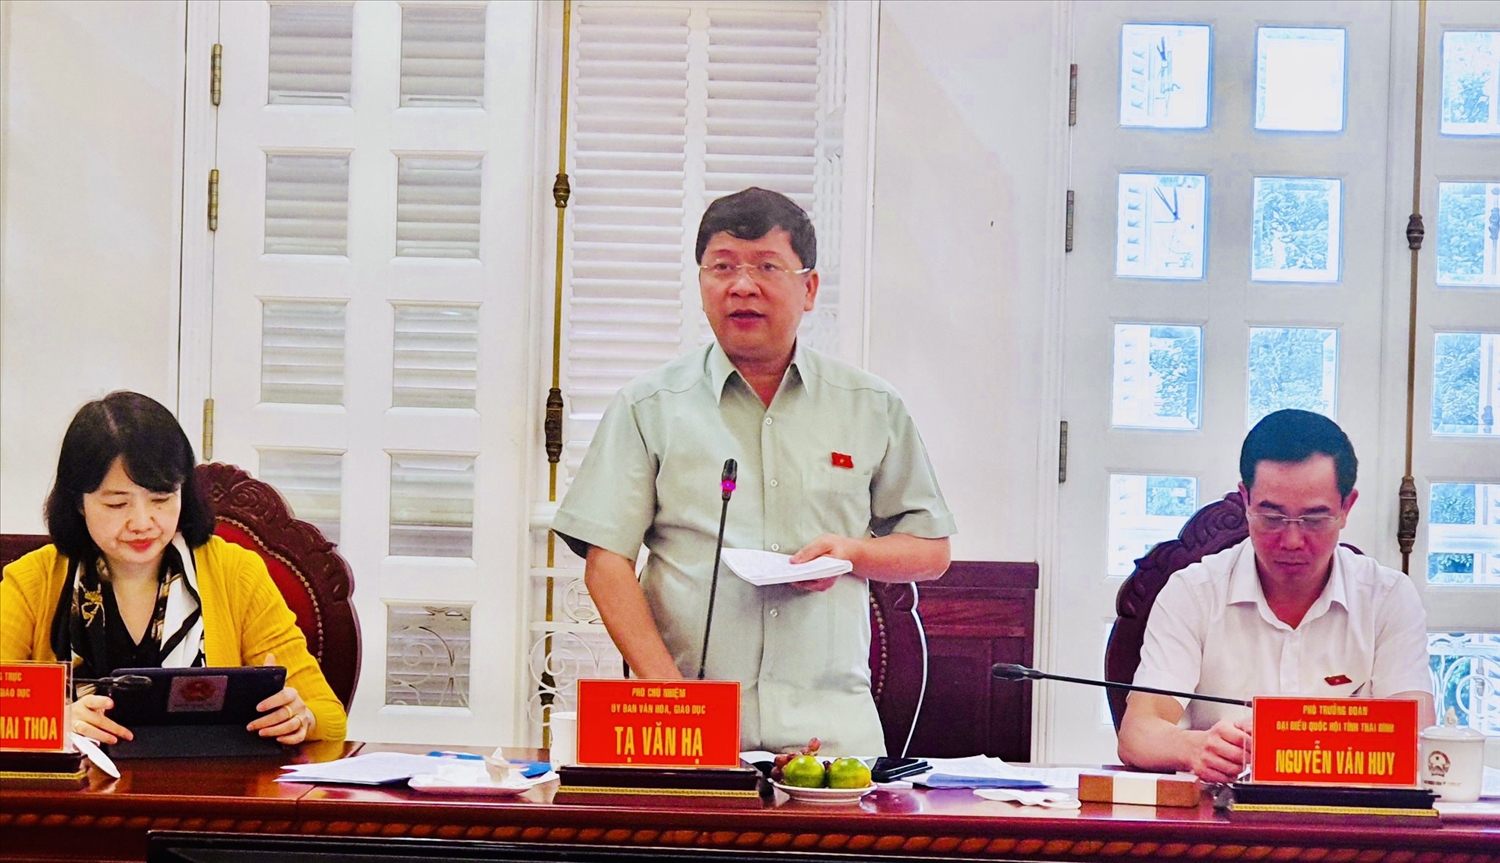 Ông Tạ Văn Hạ, Phó Chủ nhiệm Ủy ban Văn hóa - Giáo dục của Quốc hội phát biểu tại buổi làm việc